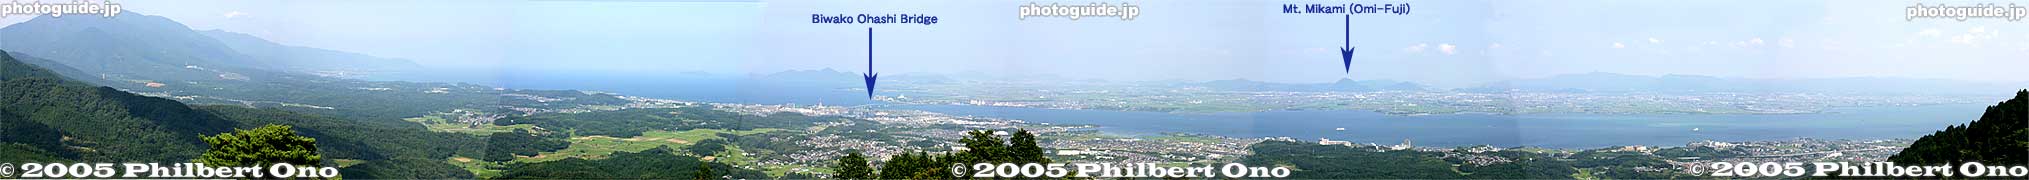 View from Mt. Hiei
Keywords: shiga lake biwako